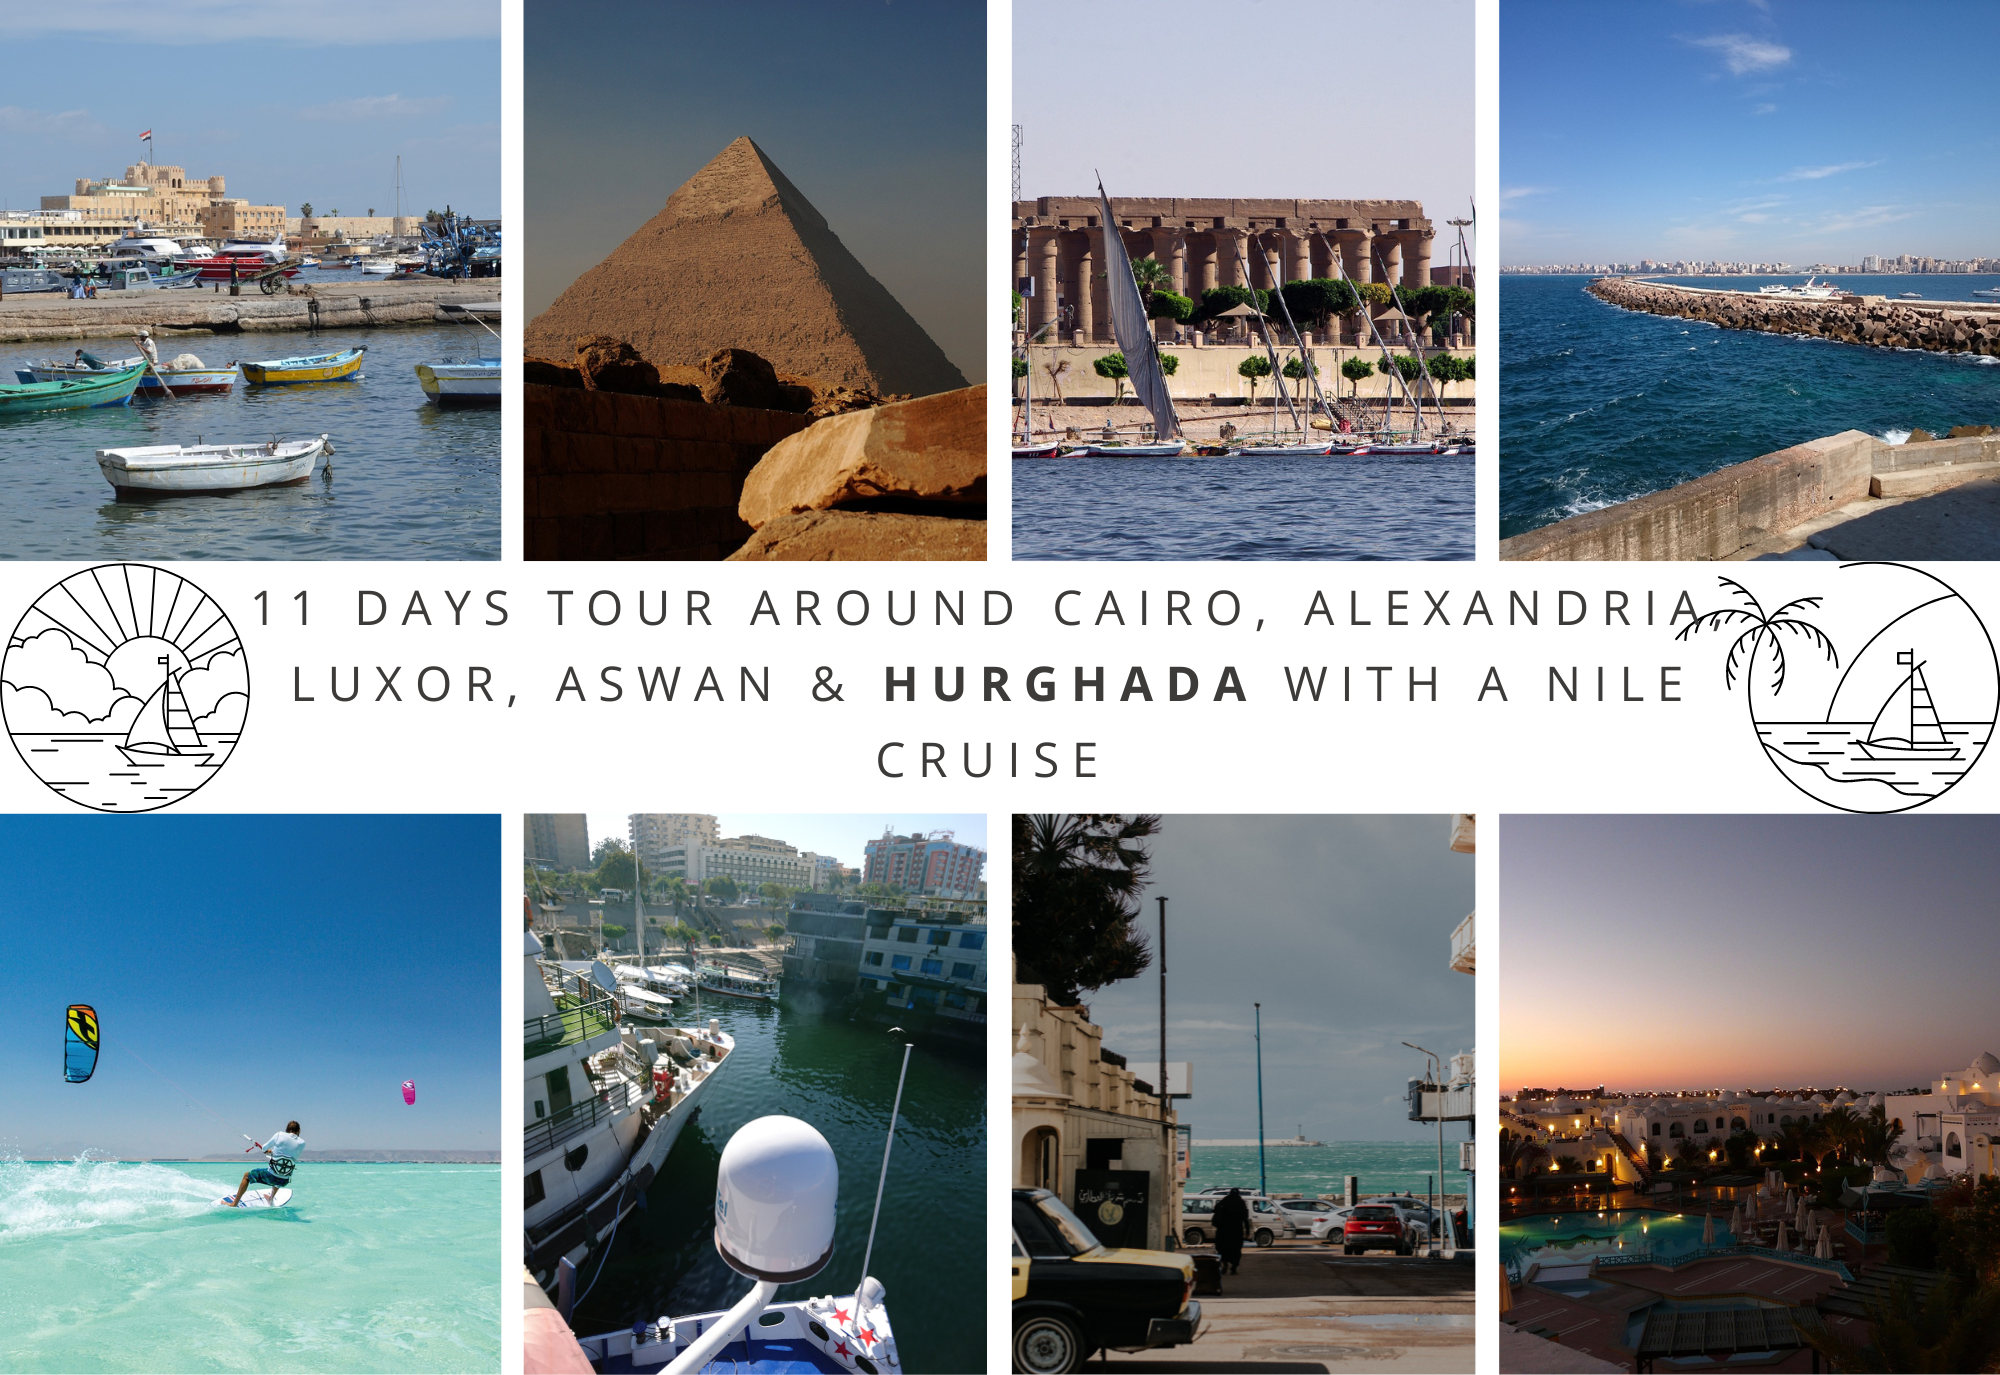 11 Days Tour around Cairo, Alexandria, Luxor, Aswan & Hurghada with a Nile Cruise